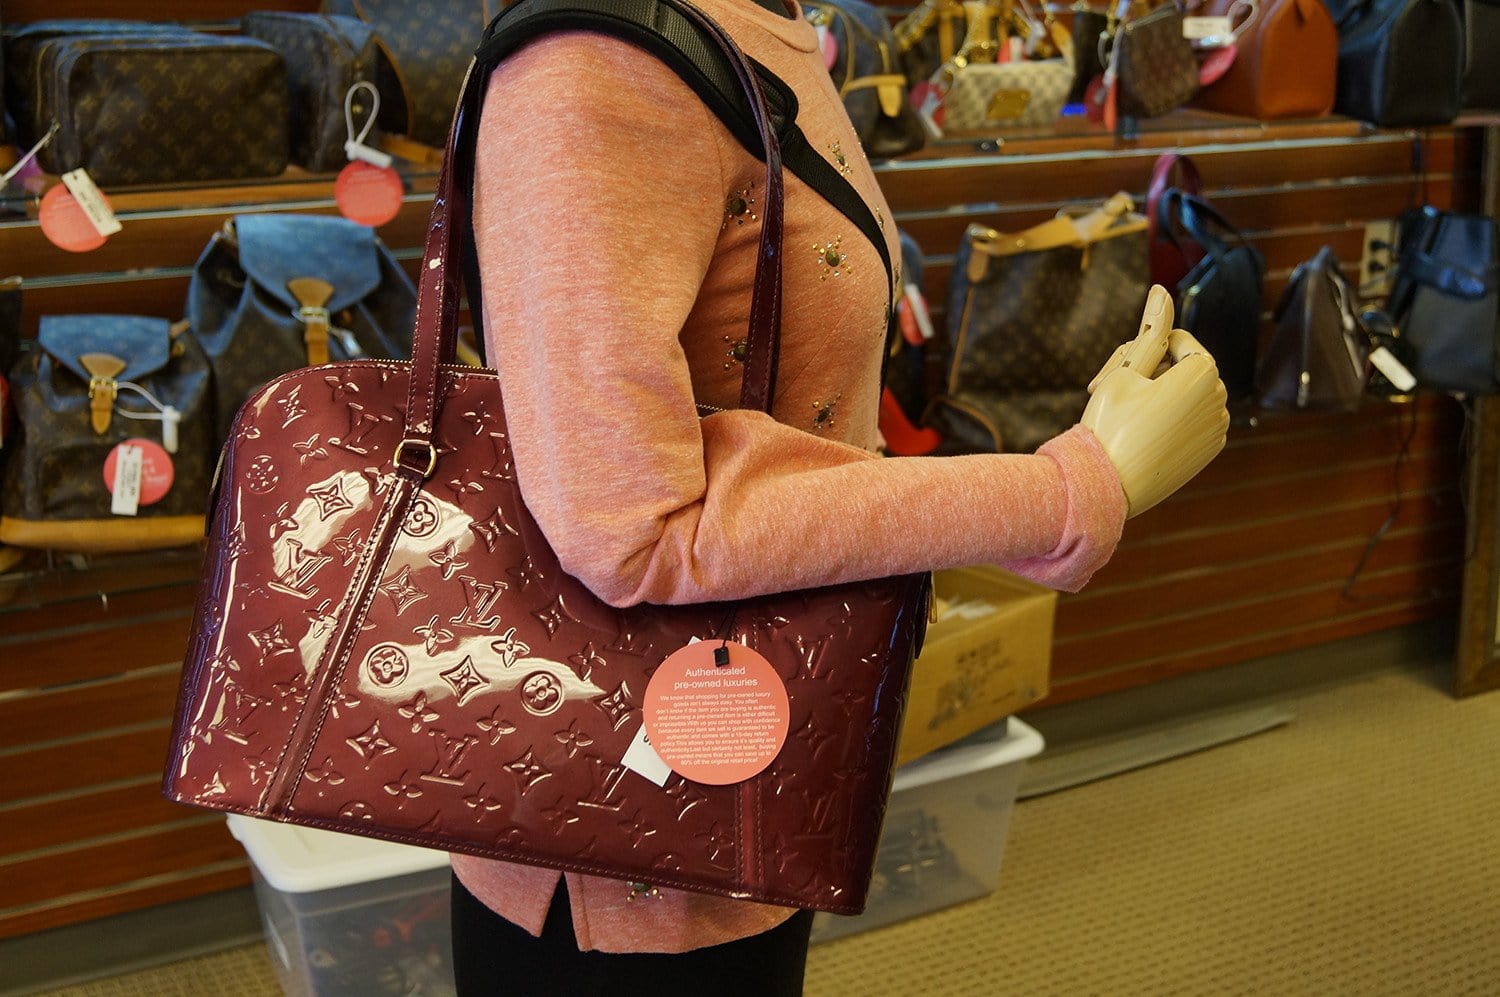 Louis Vuitton, Bags, Authenticity Guaranteed Louis Vuitton Epi Voltaire Shoulder  Tote Bag Purse Red